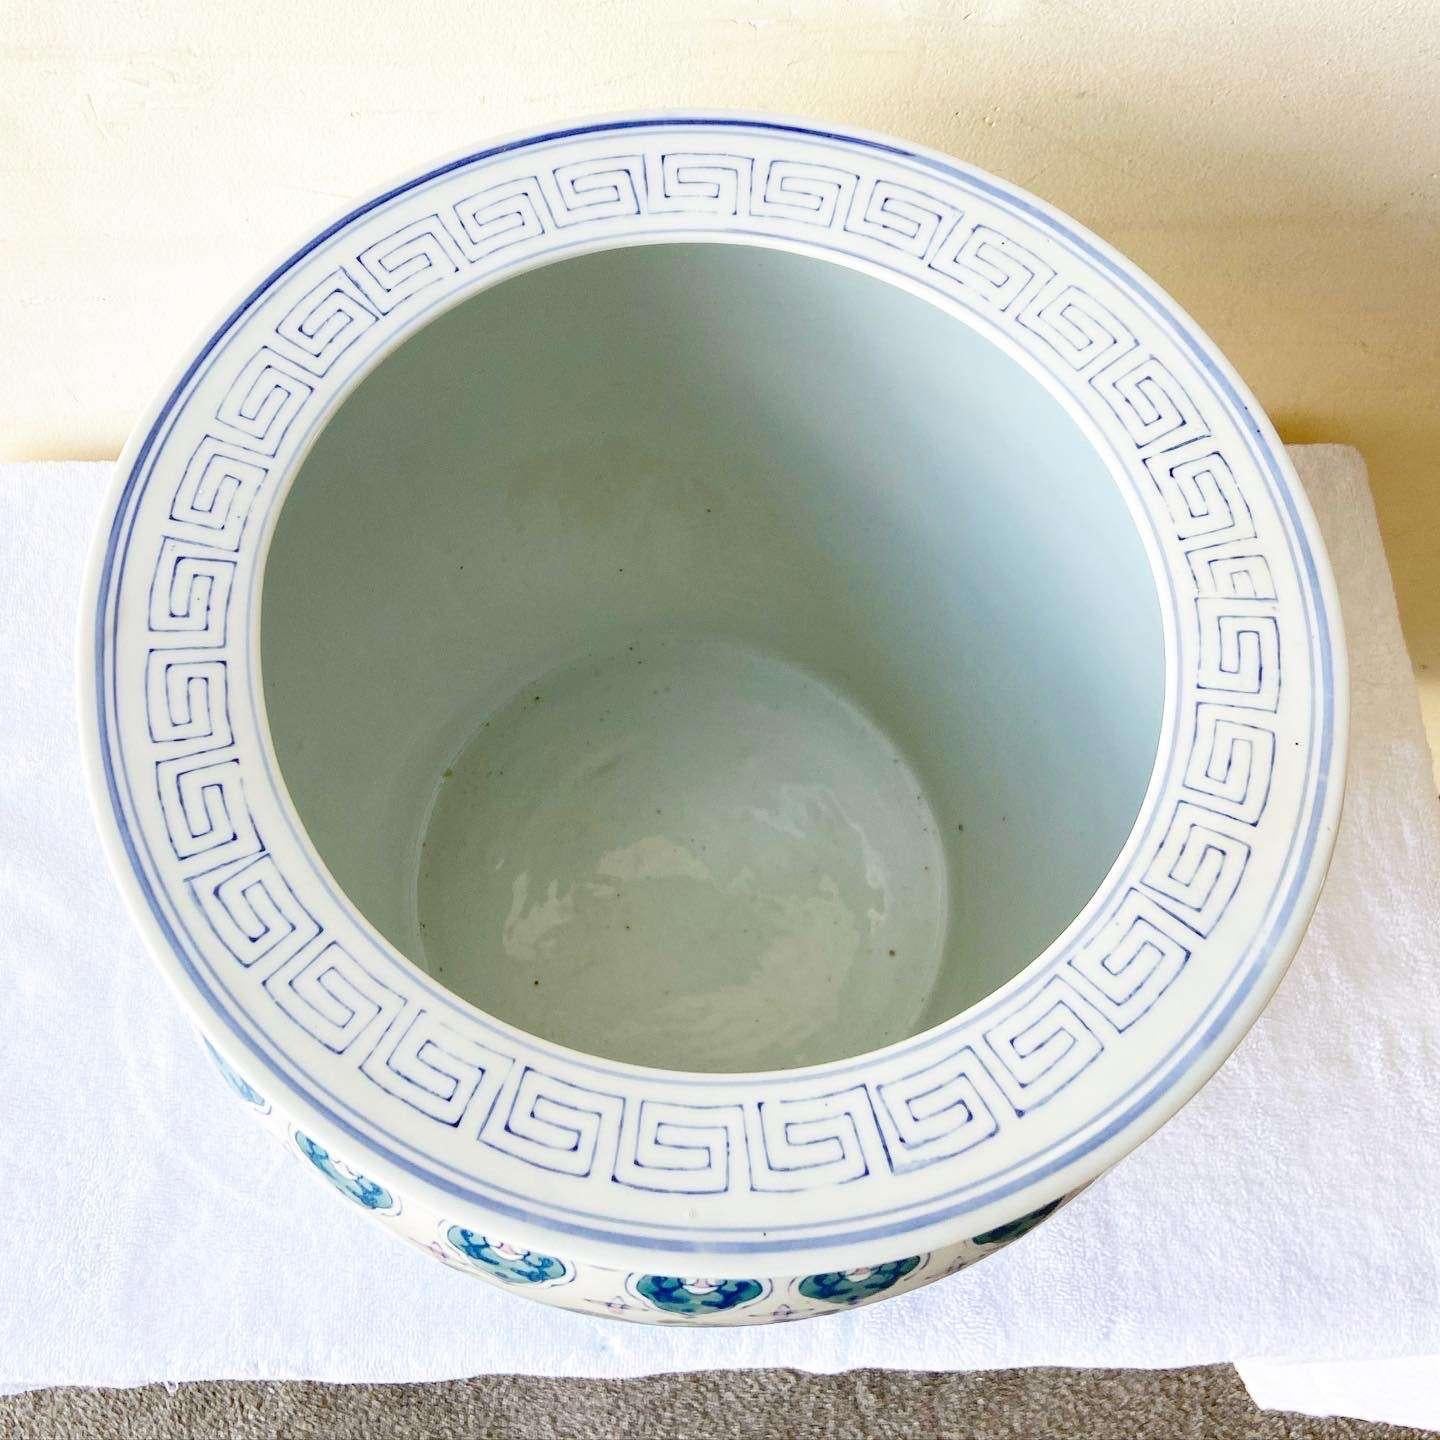 Erstaunlich Vintage chinesischen Keramik Fisch Schüssel Vase. Mit einem handgemalten blauen und rosafarbenen Lotosmuster.
